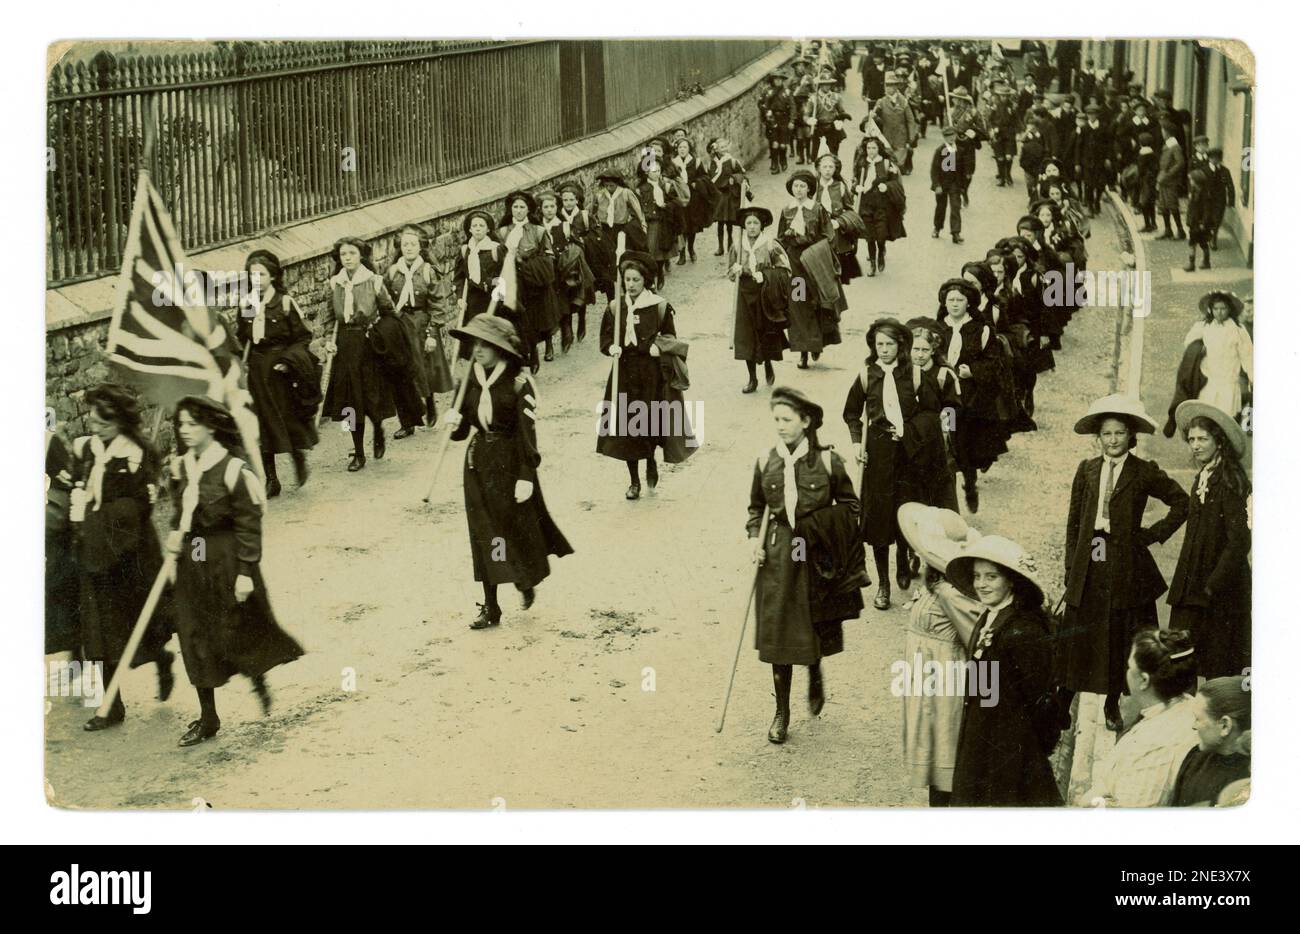 Originale patriotische Truppen aus Führerinnen und Pfadfinderinnen, die durch eine Stadt marschieren, mit einer Union-Jack-Flagge marschieren, eine öffentliche Kundschafter-Rallye, einige der Zuschauer tragen ein Reverskragen-Band, ca. 1912, Großbritannien Stockfoto